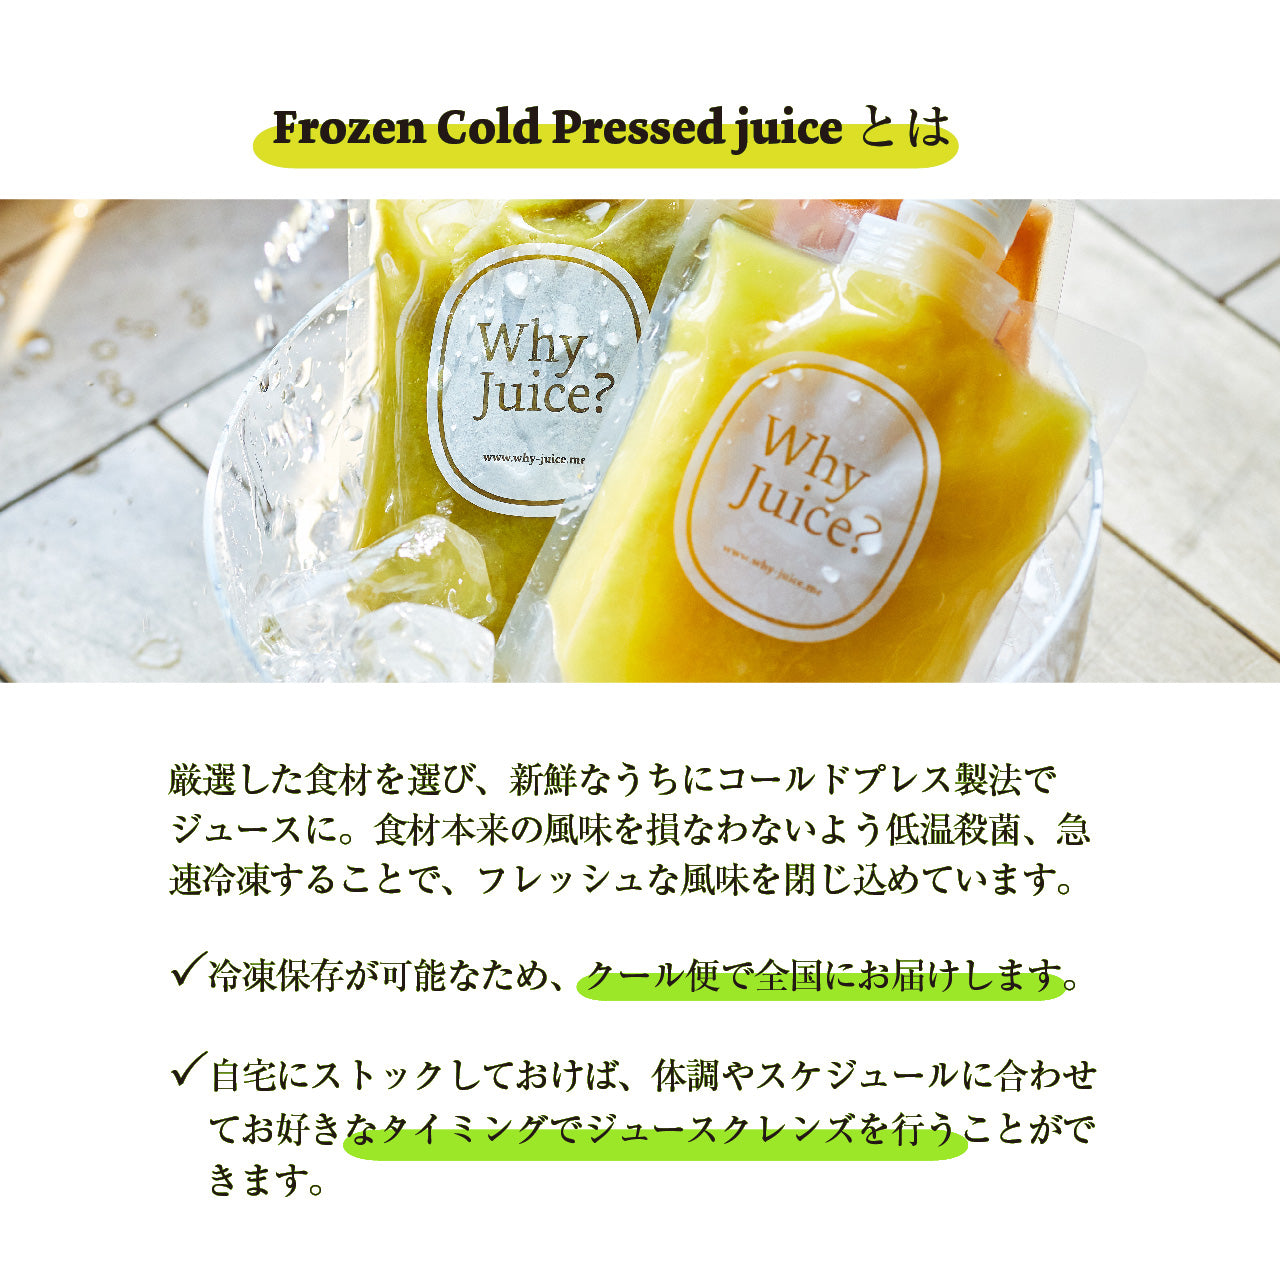 【ジュースクレンズ】Frozen Detox Juice Program 【Half-day "SUNSET"】3本セット【コールドプレスジュース】